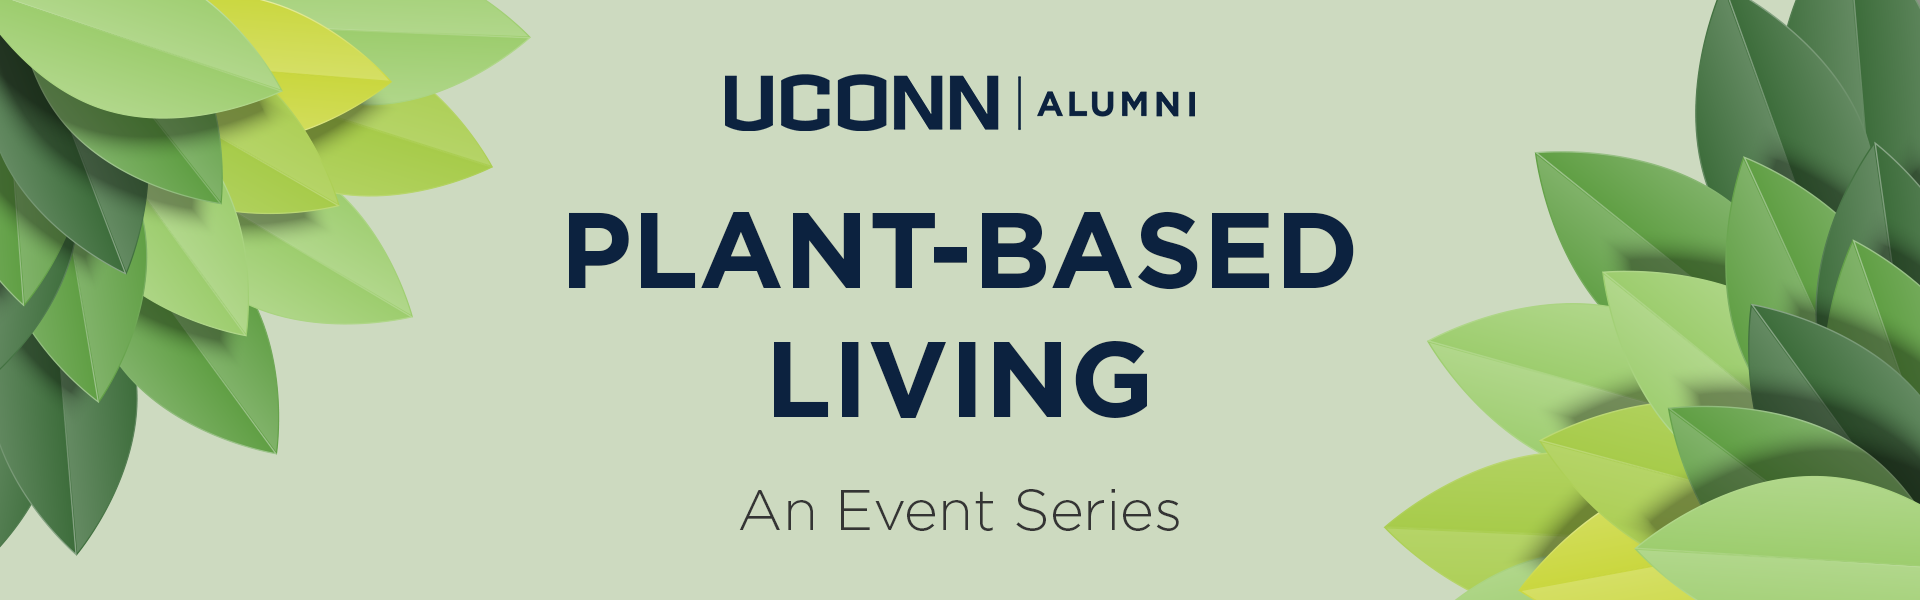 UConn Alumni Plant Based Living Series